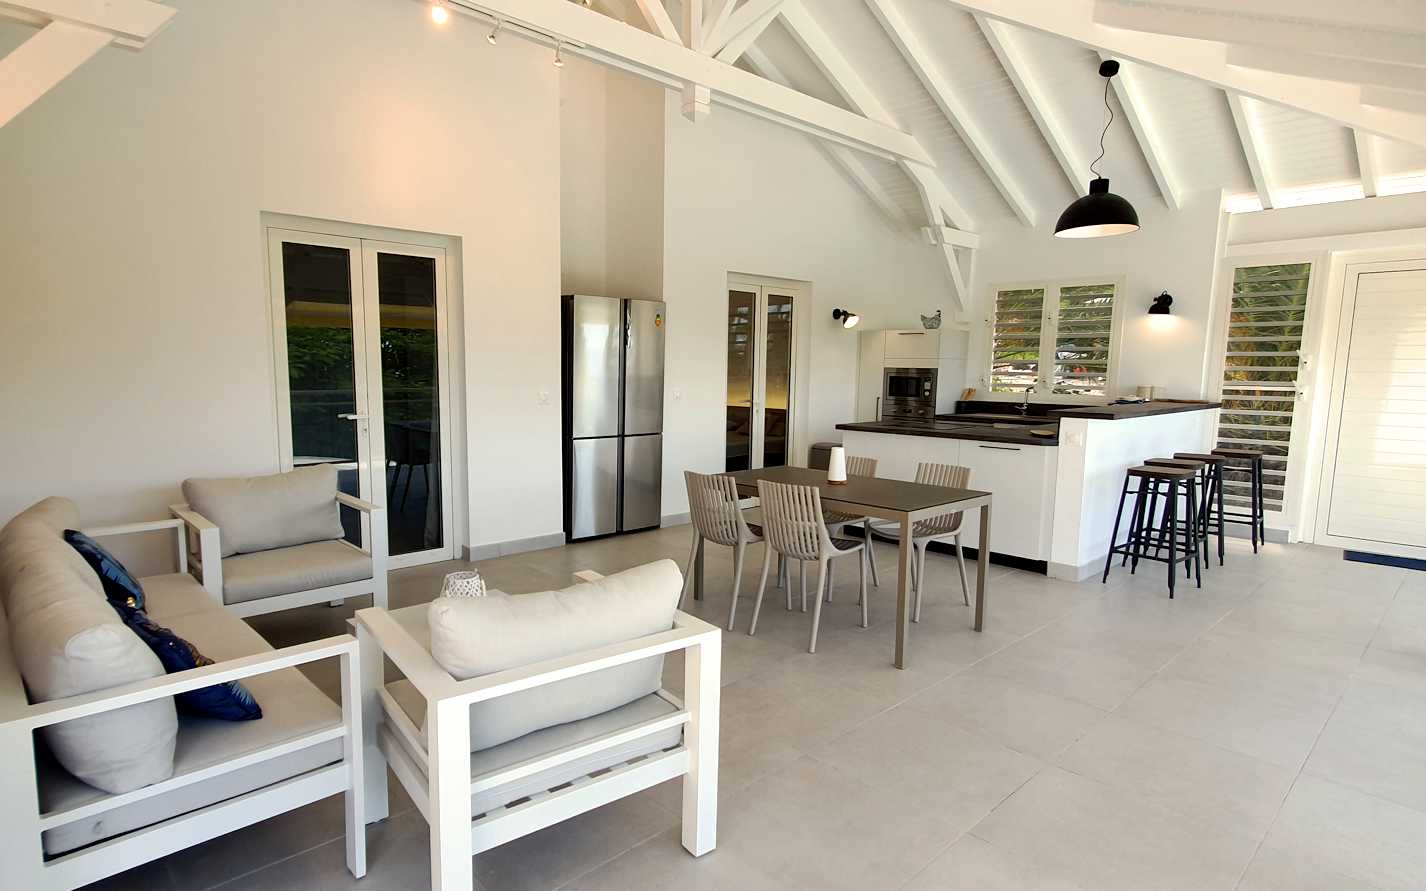 Terrasse couverte avec salon, table pour 4, coin cuisine et tablette bar.